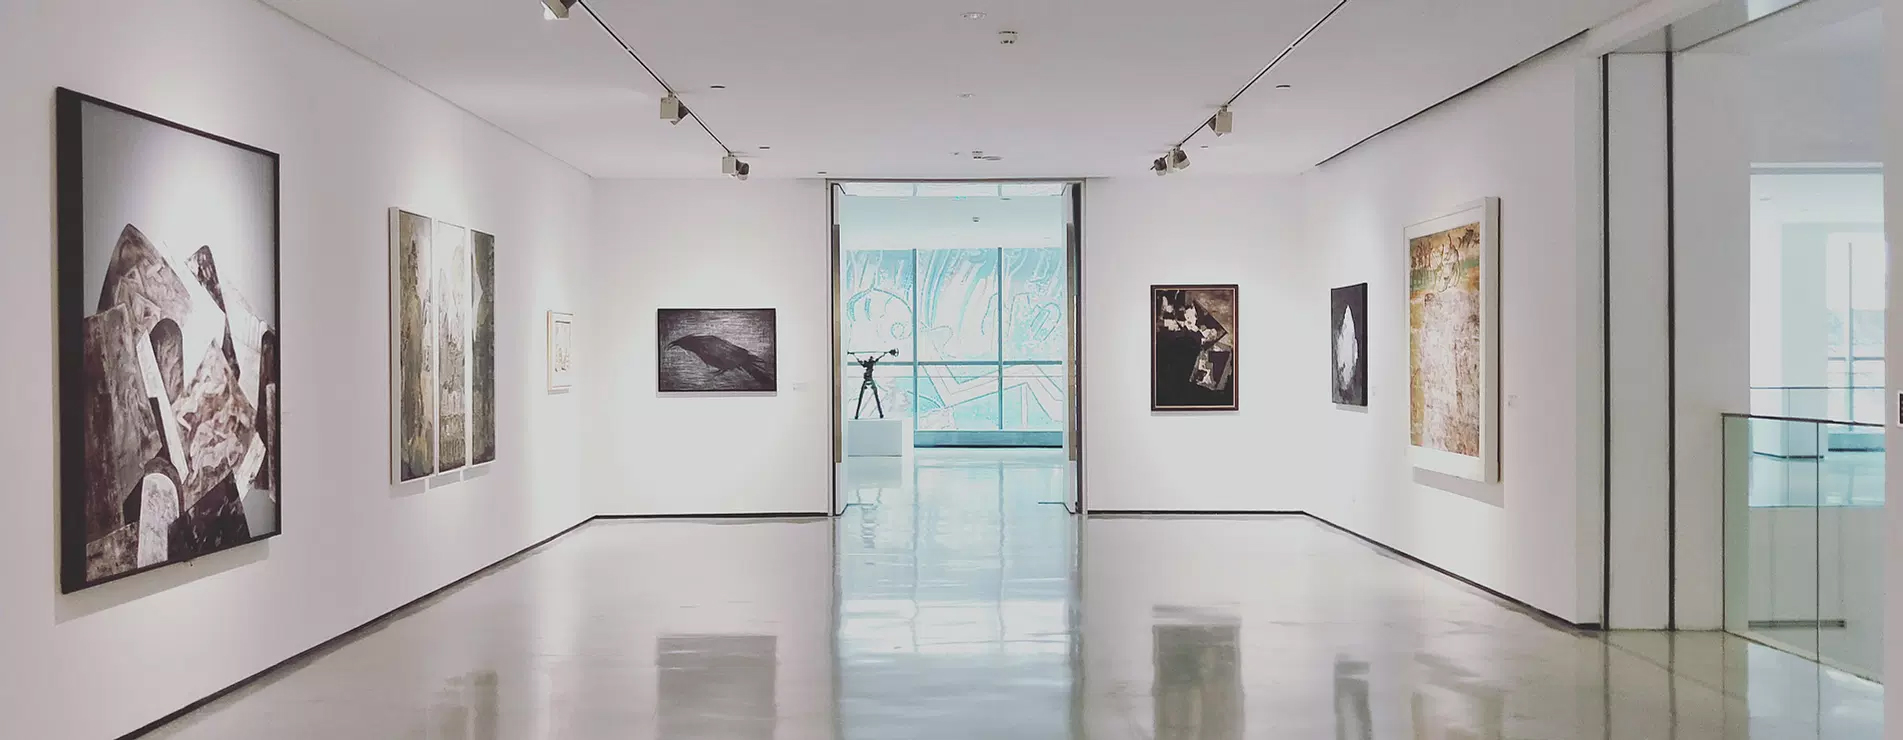 Galerie Artborescence